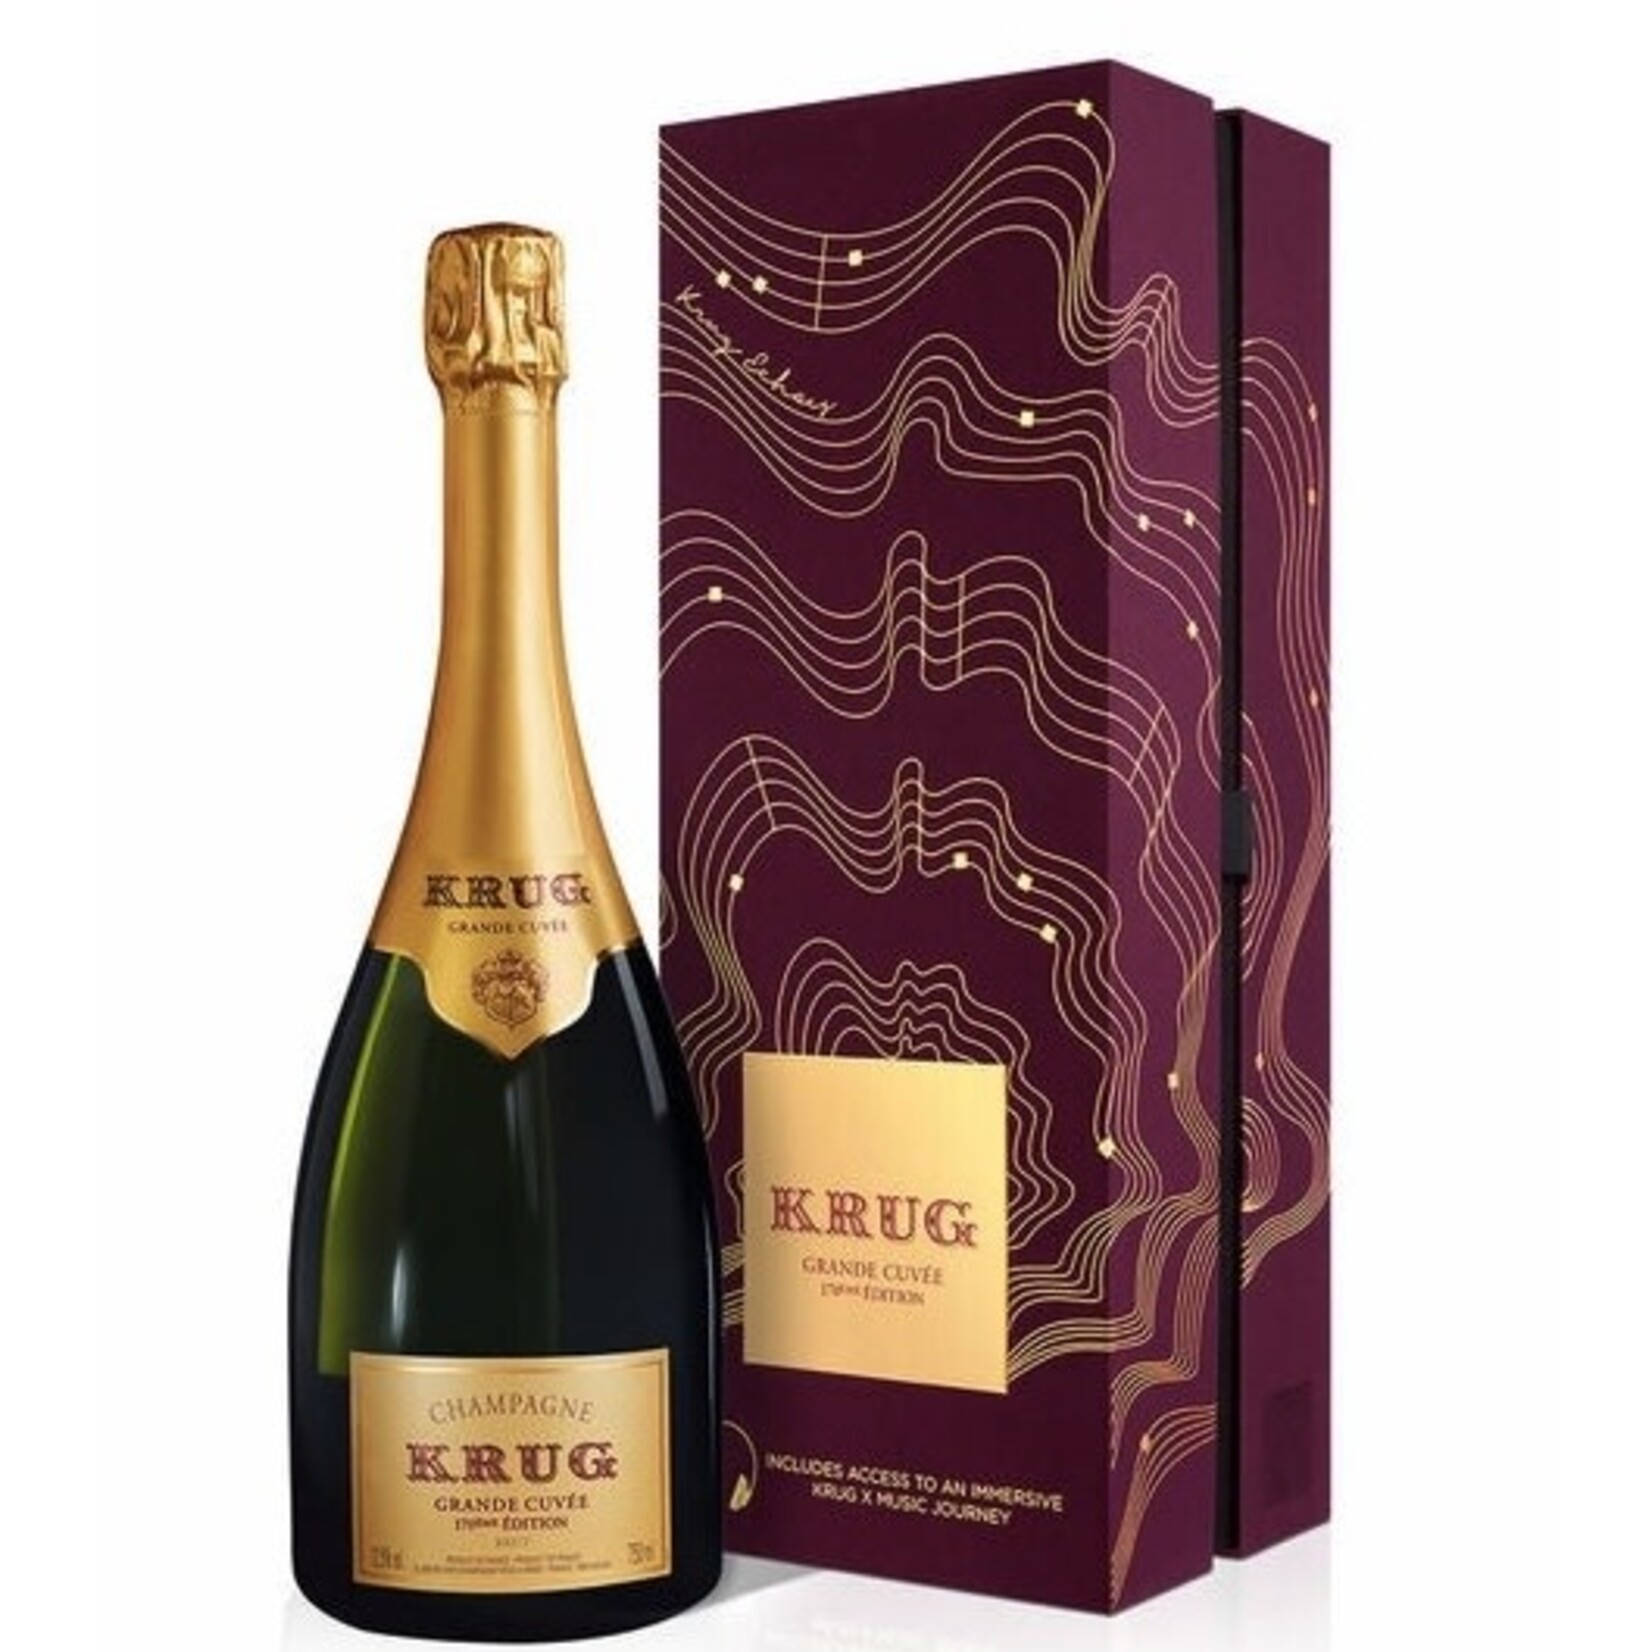 Sparkling Krug Champagne Brut Grande Cuvee 171 Edition